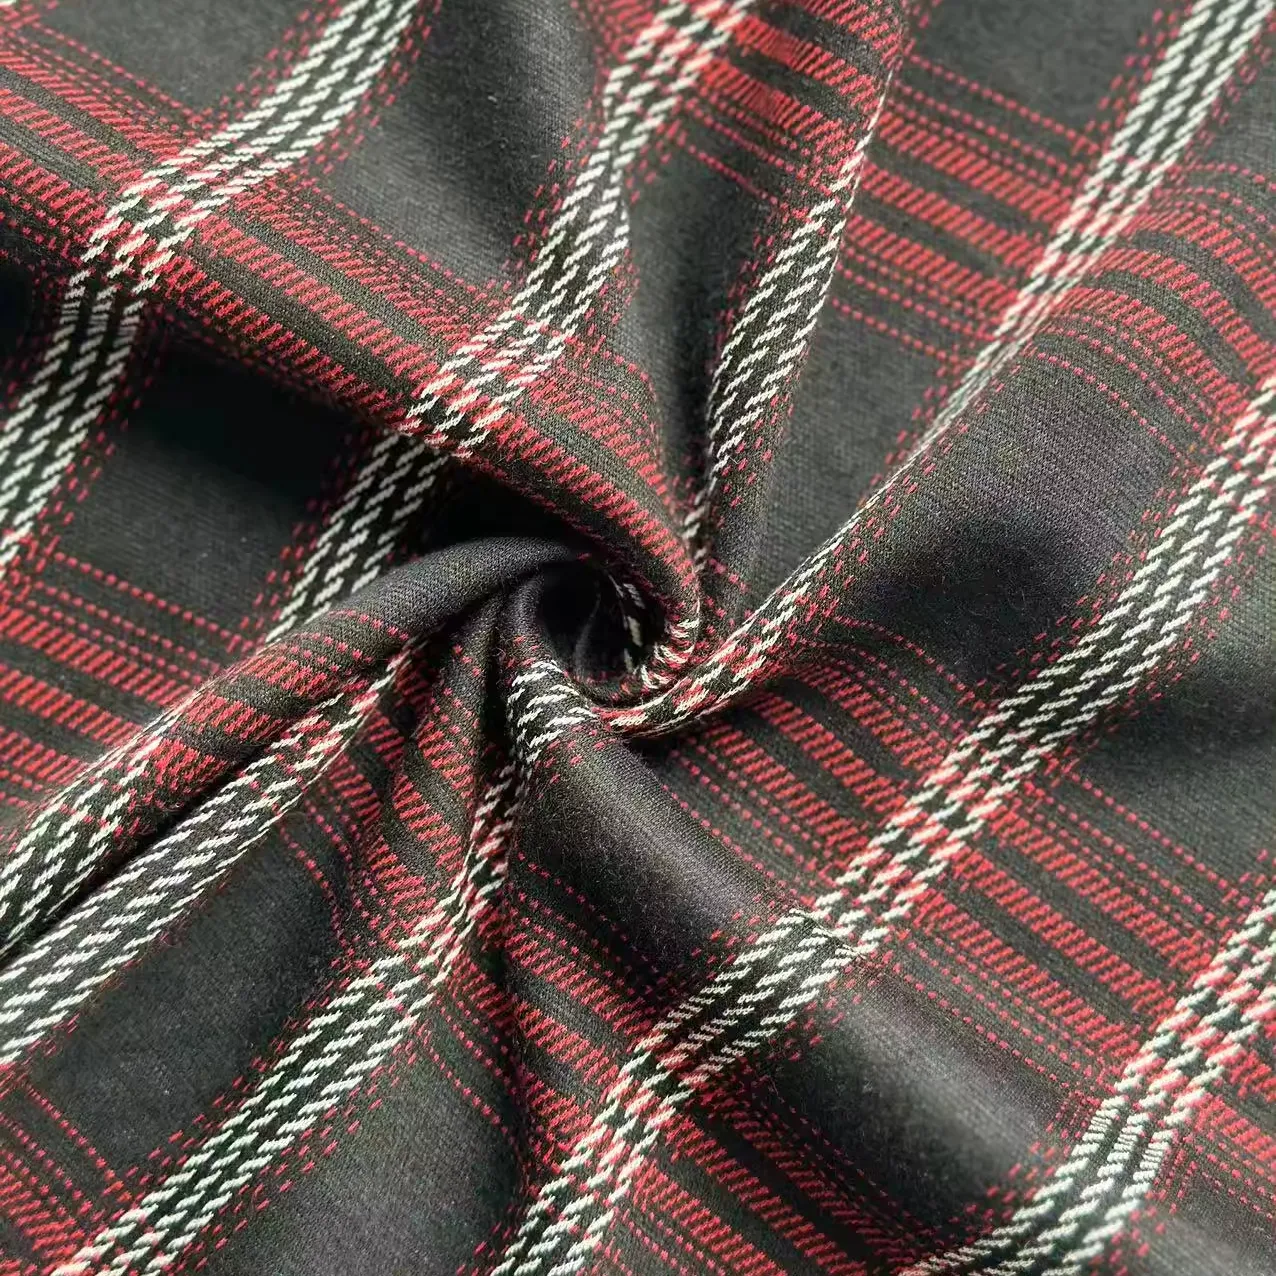 TC tessuto organico in maglia Jacquard rosso e nero Plaid tinto in filo per camicie da ragazzo scarpe traspiranti ed elastiche